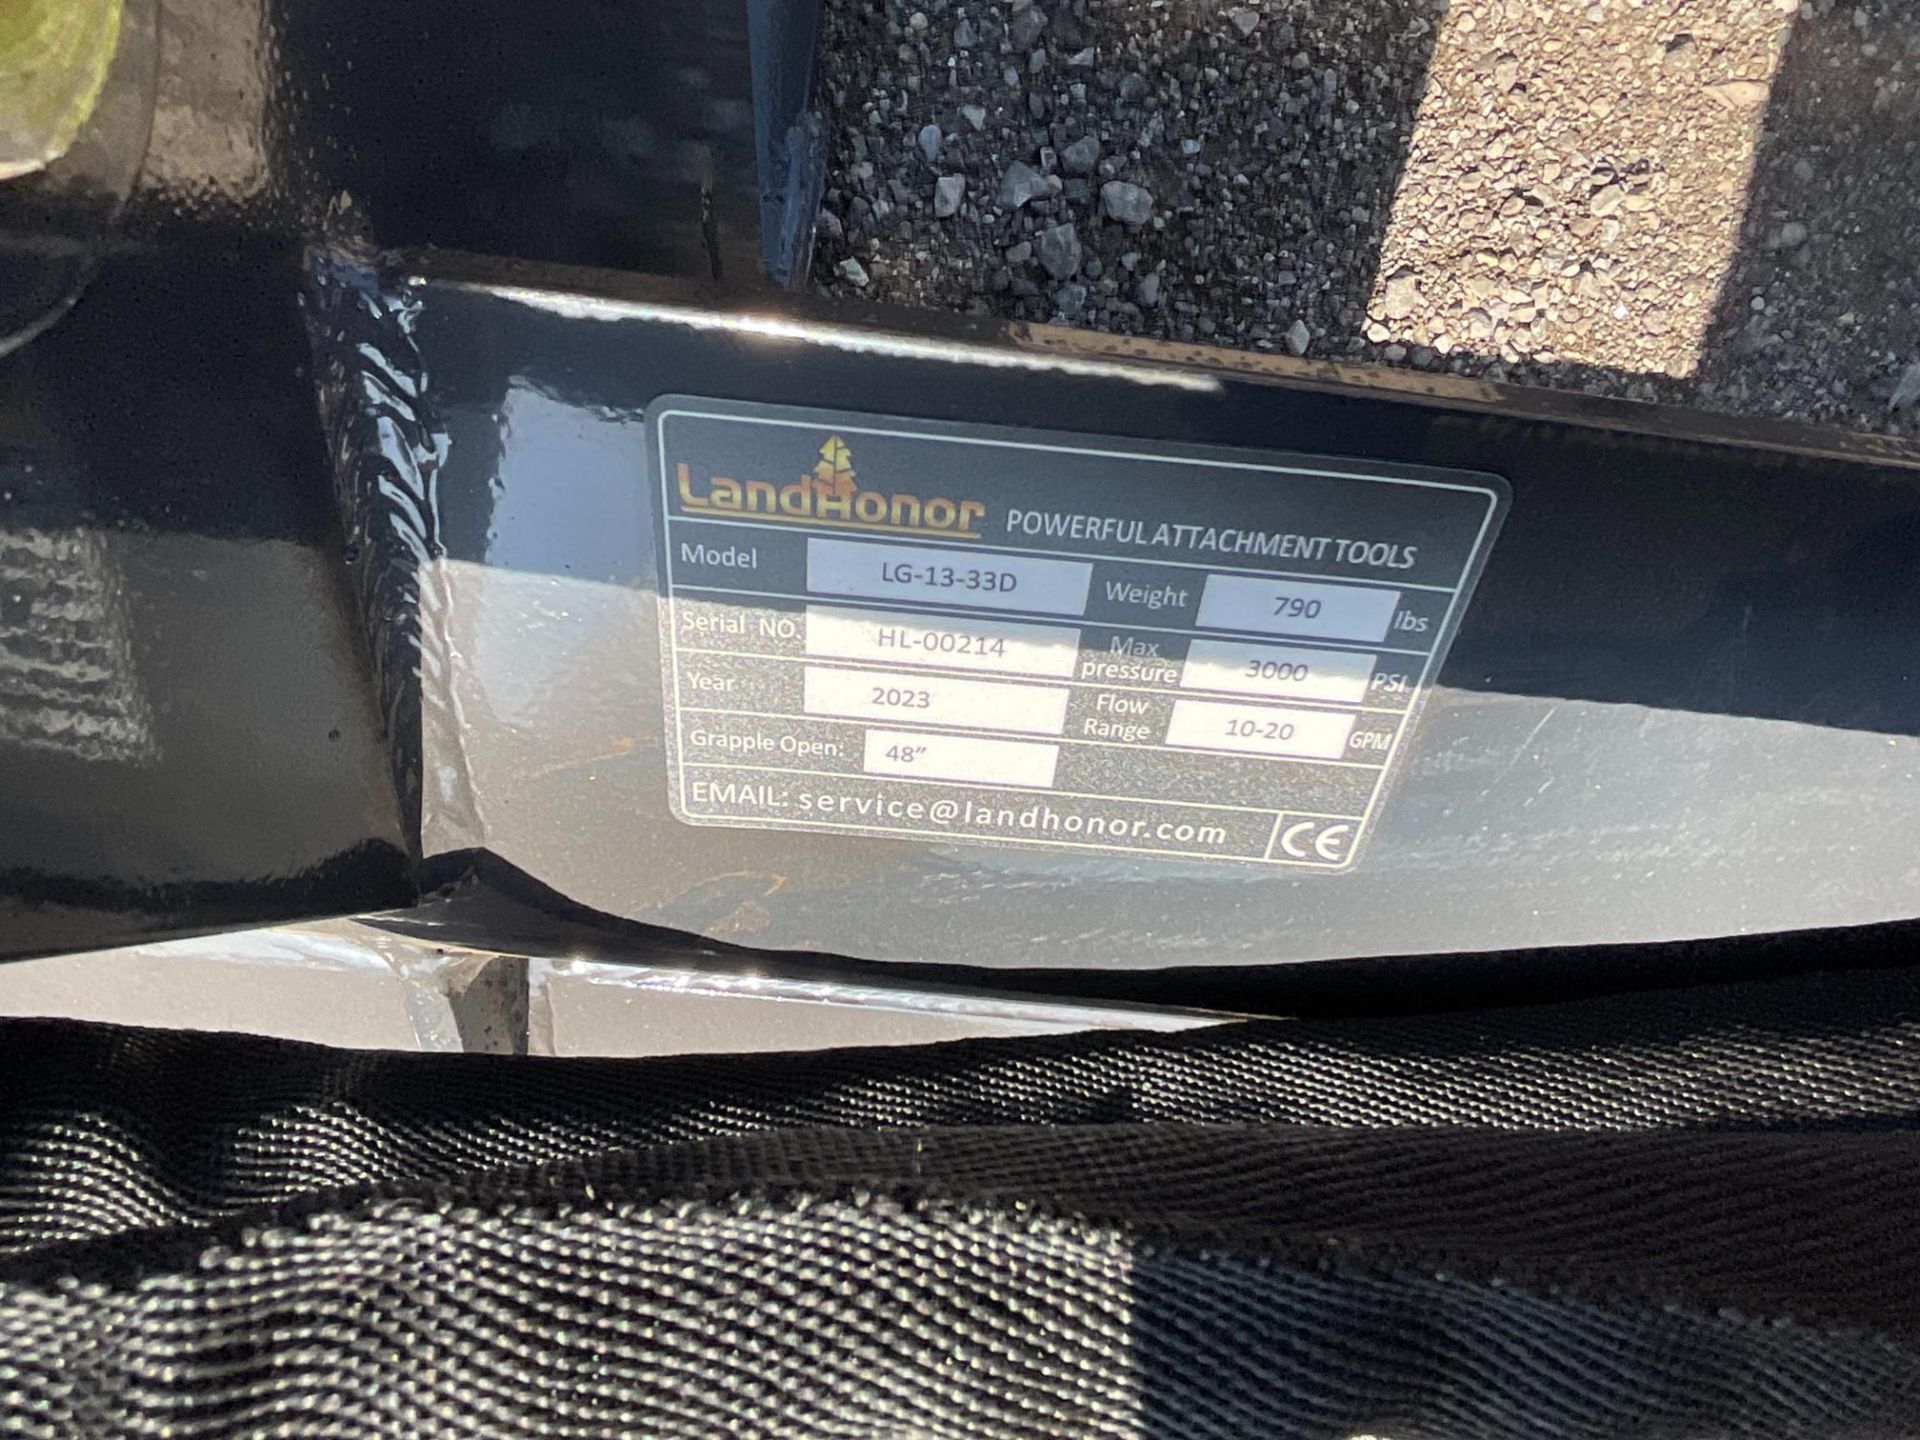 Landhonor DCM-11-250G Discharge Concrete Mixer - Image 7 of 7